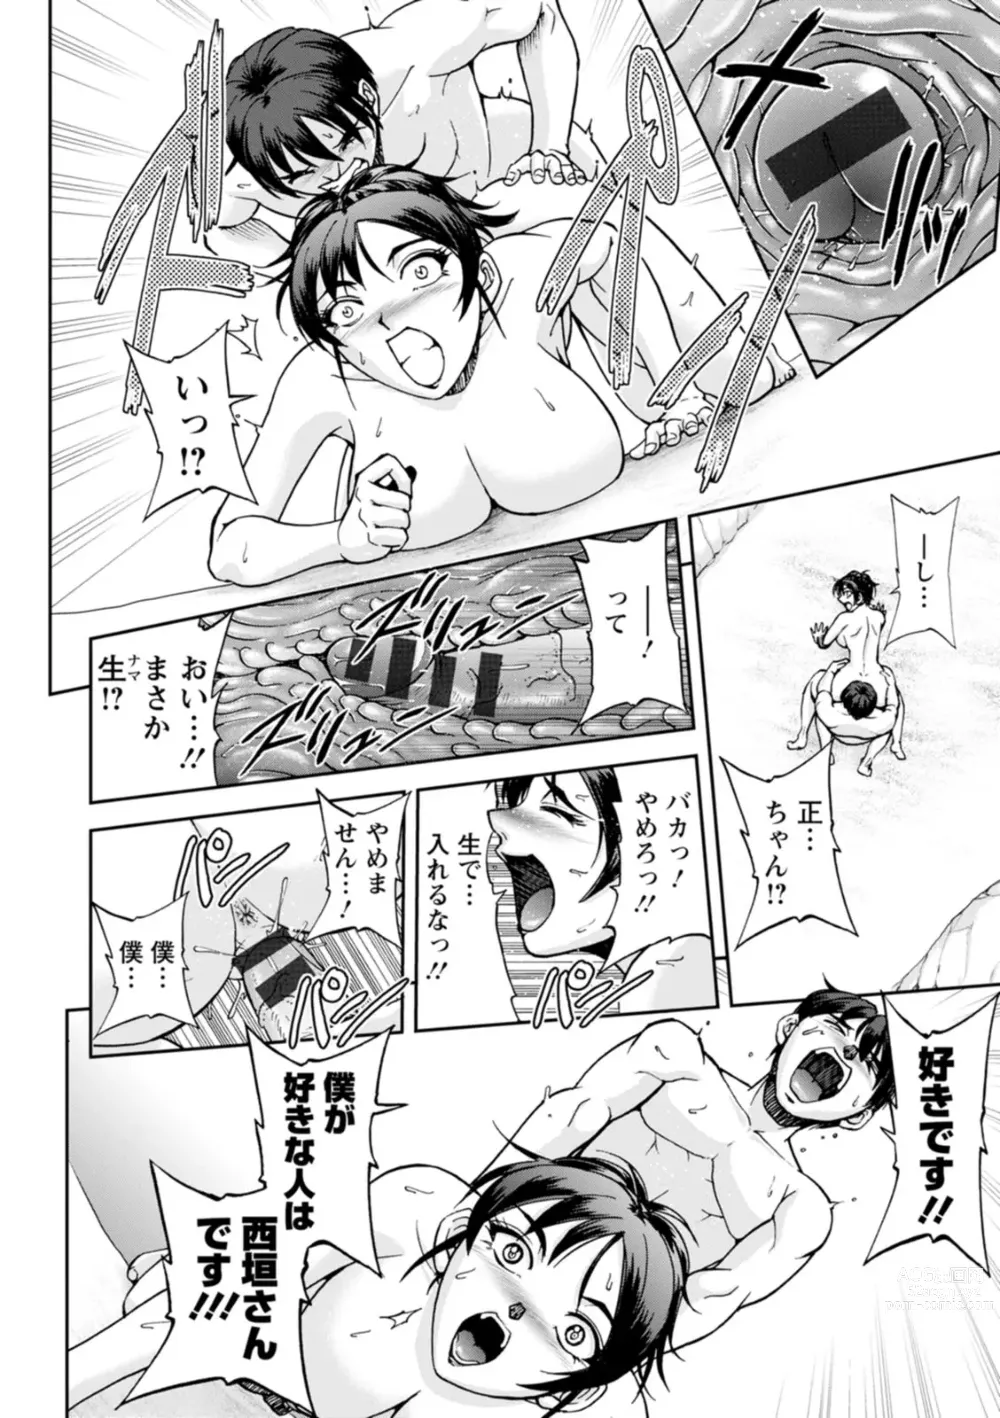 Page 32 of doujinshi Nishigaki-san is stylish and inane